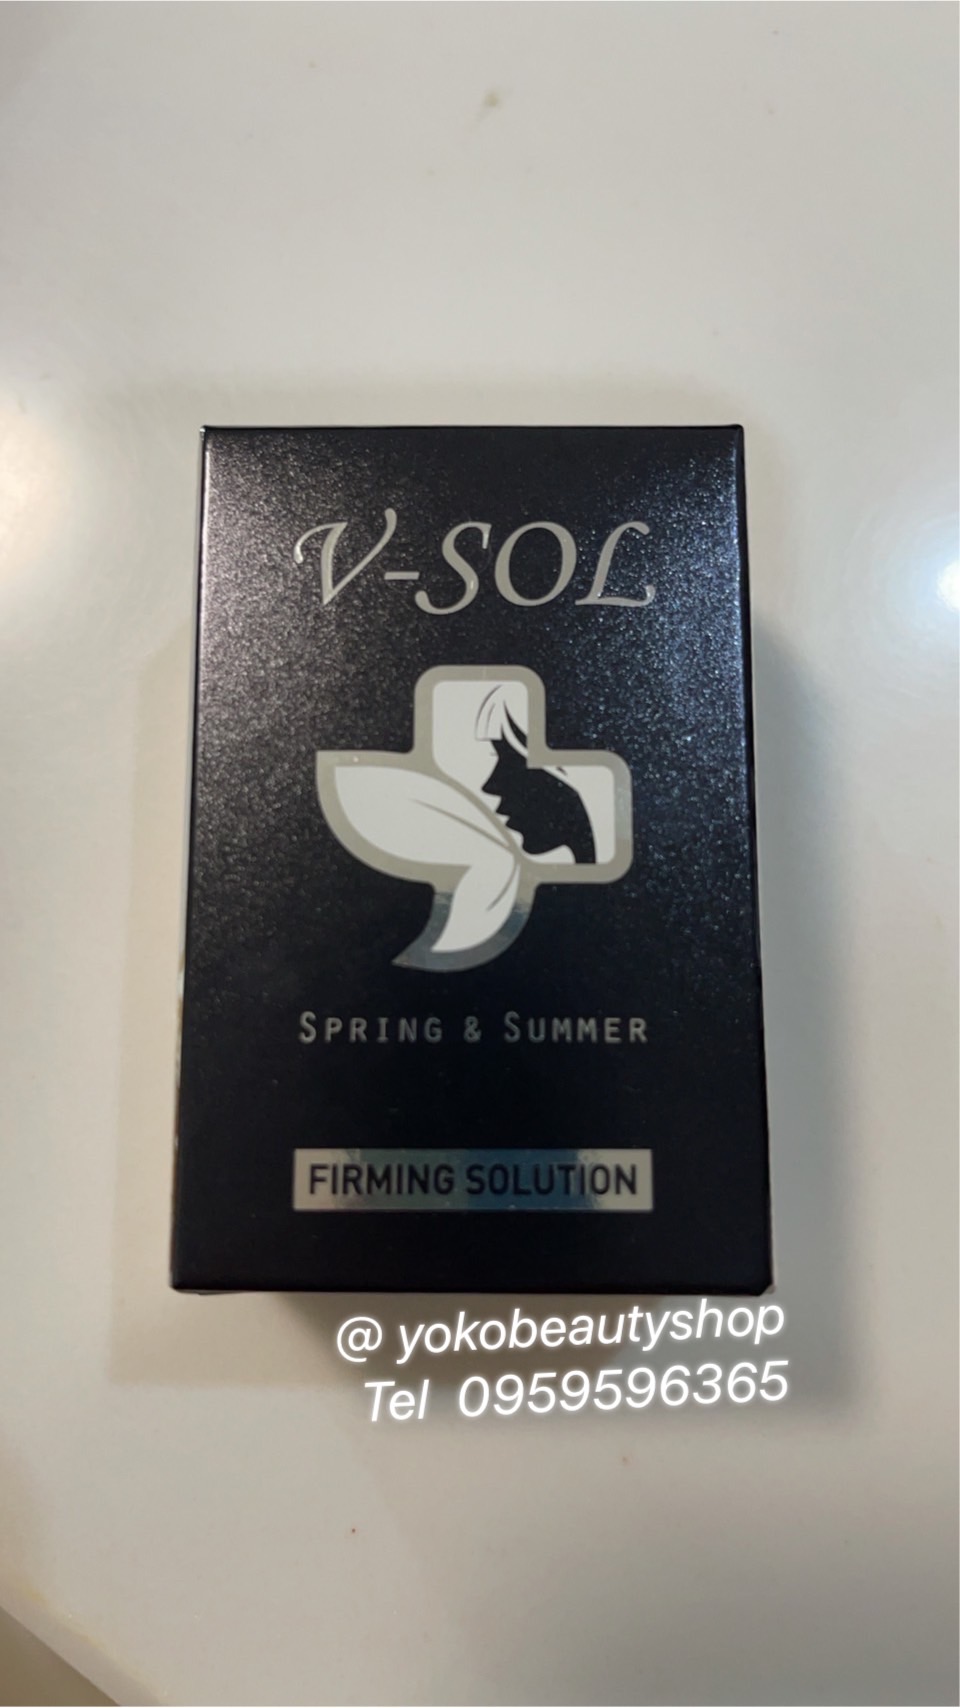 รูปภาพที่1 ของสินค้า : V-Sol อย ไทย   Spring & Summer Firming Solution   บอกลาผิวเปลือกส้ม ด้วยเมโสแฟต V-Sol